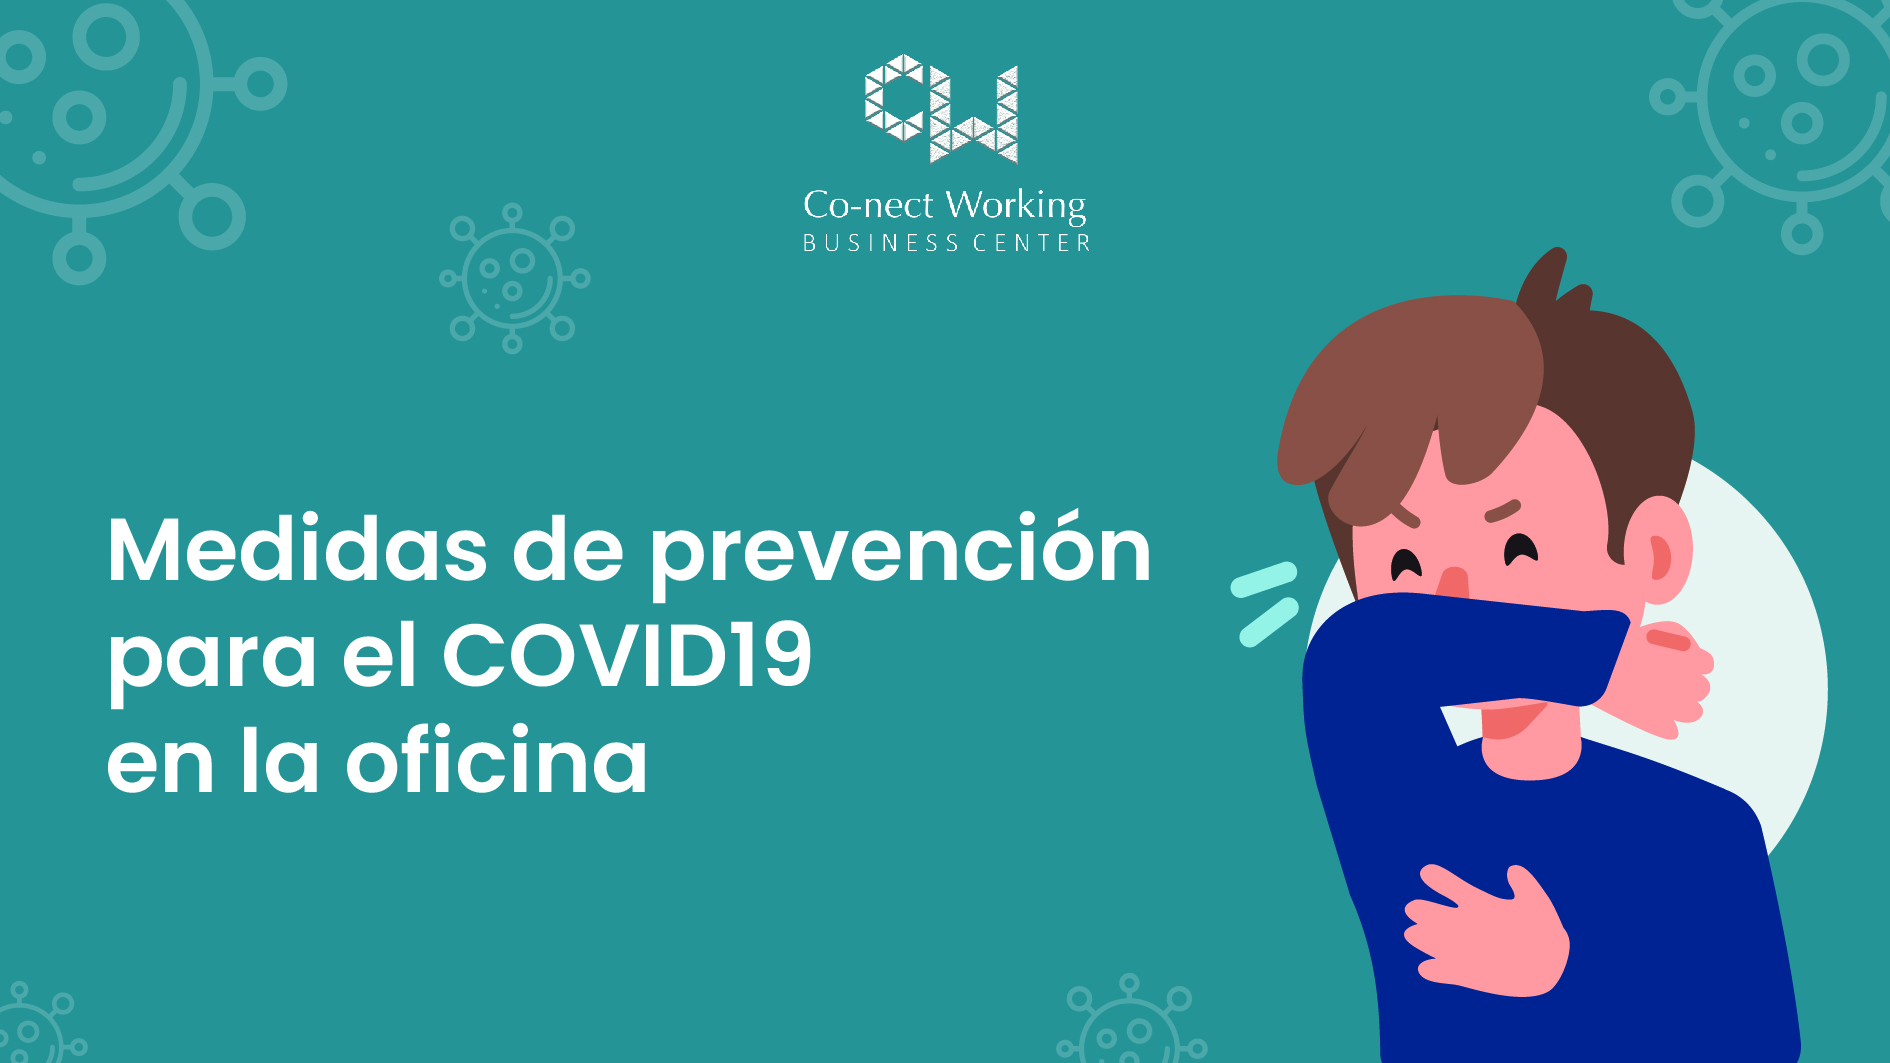 Medidas de prevención para el COVID19 en la oficina